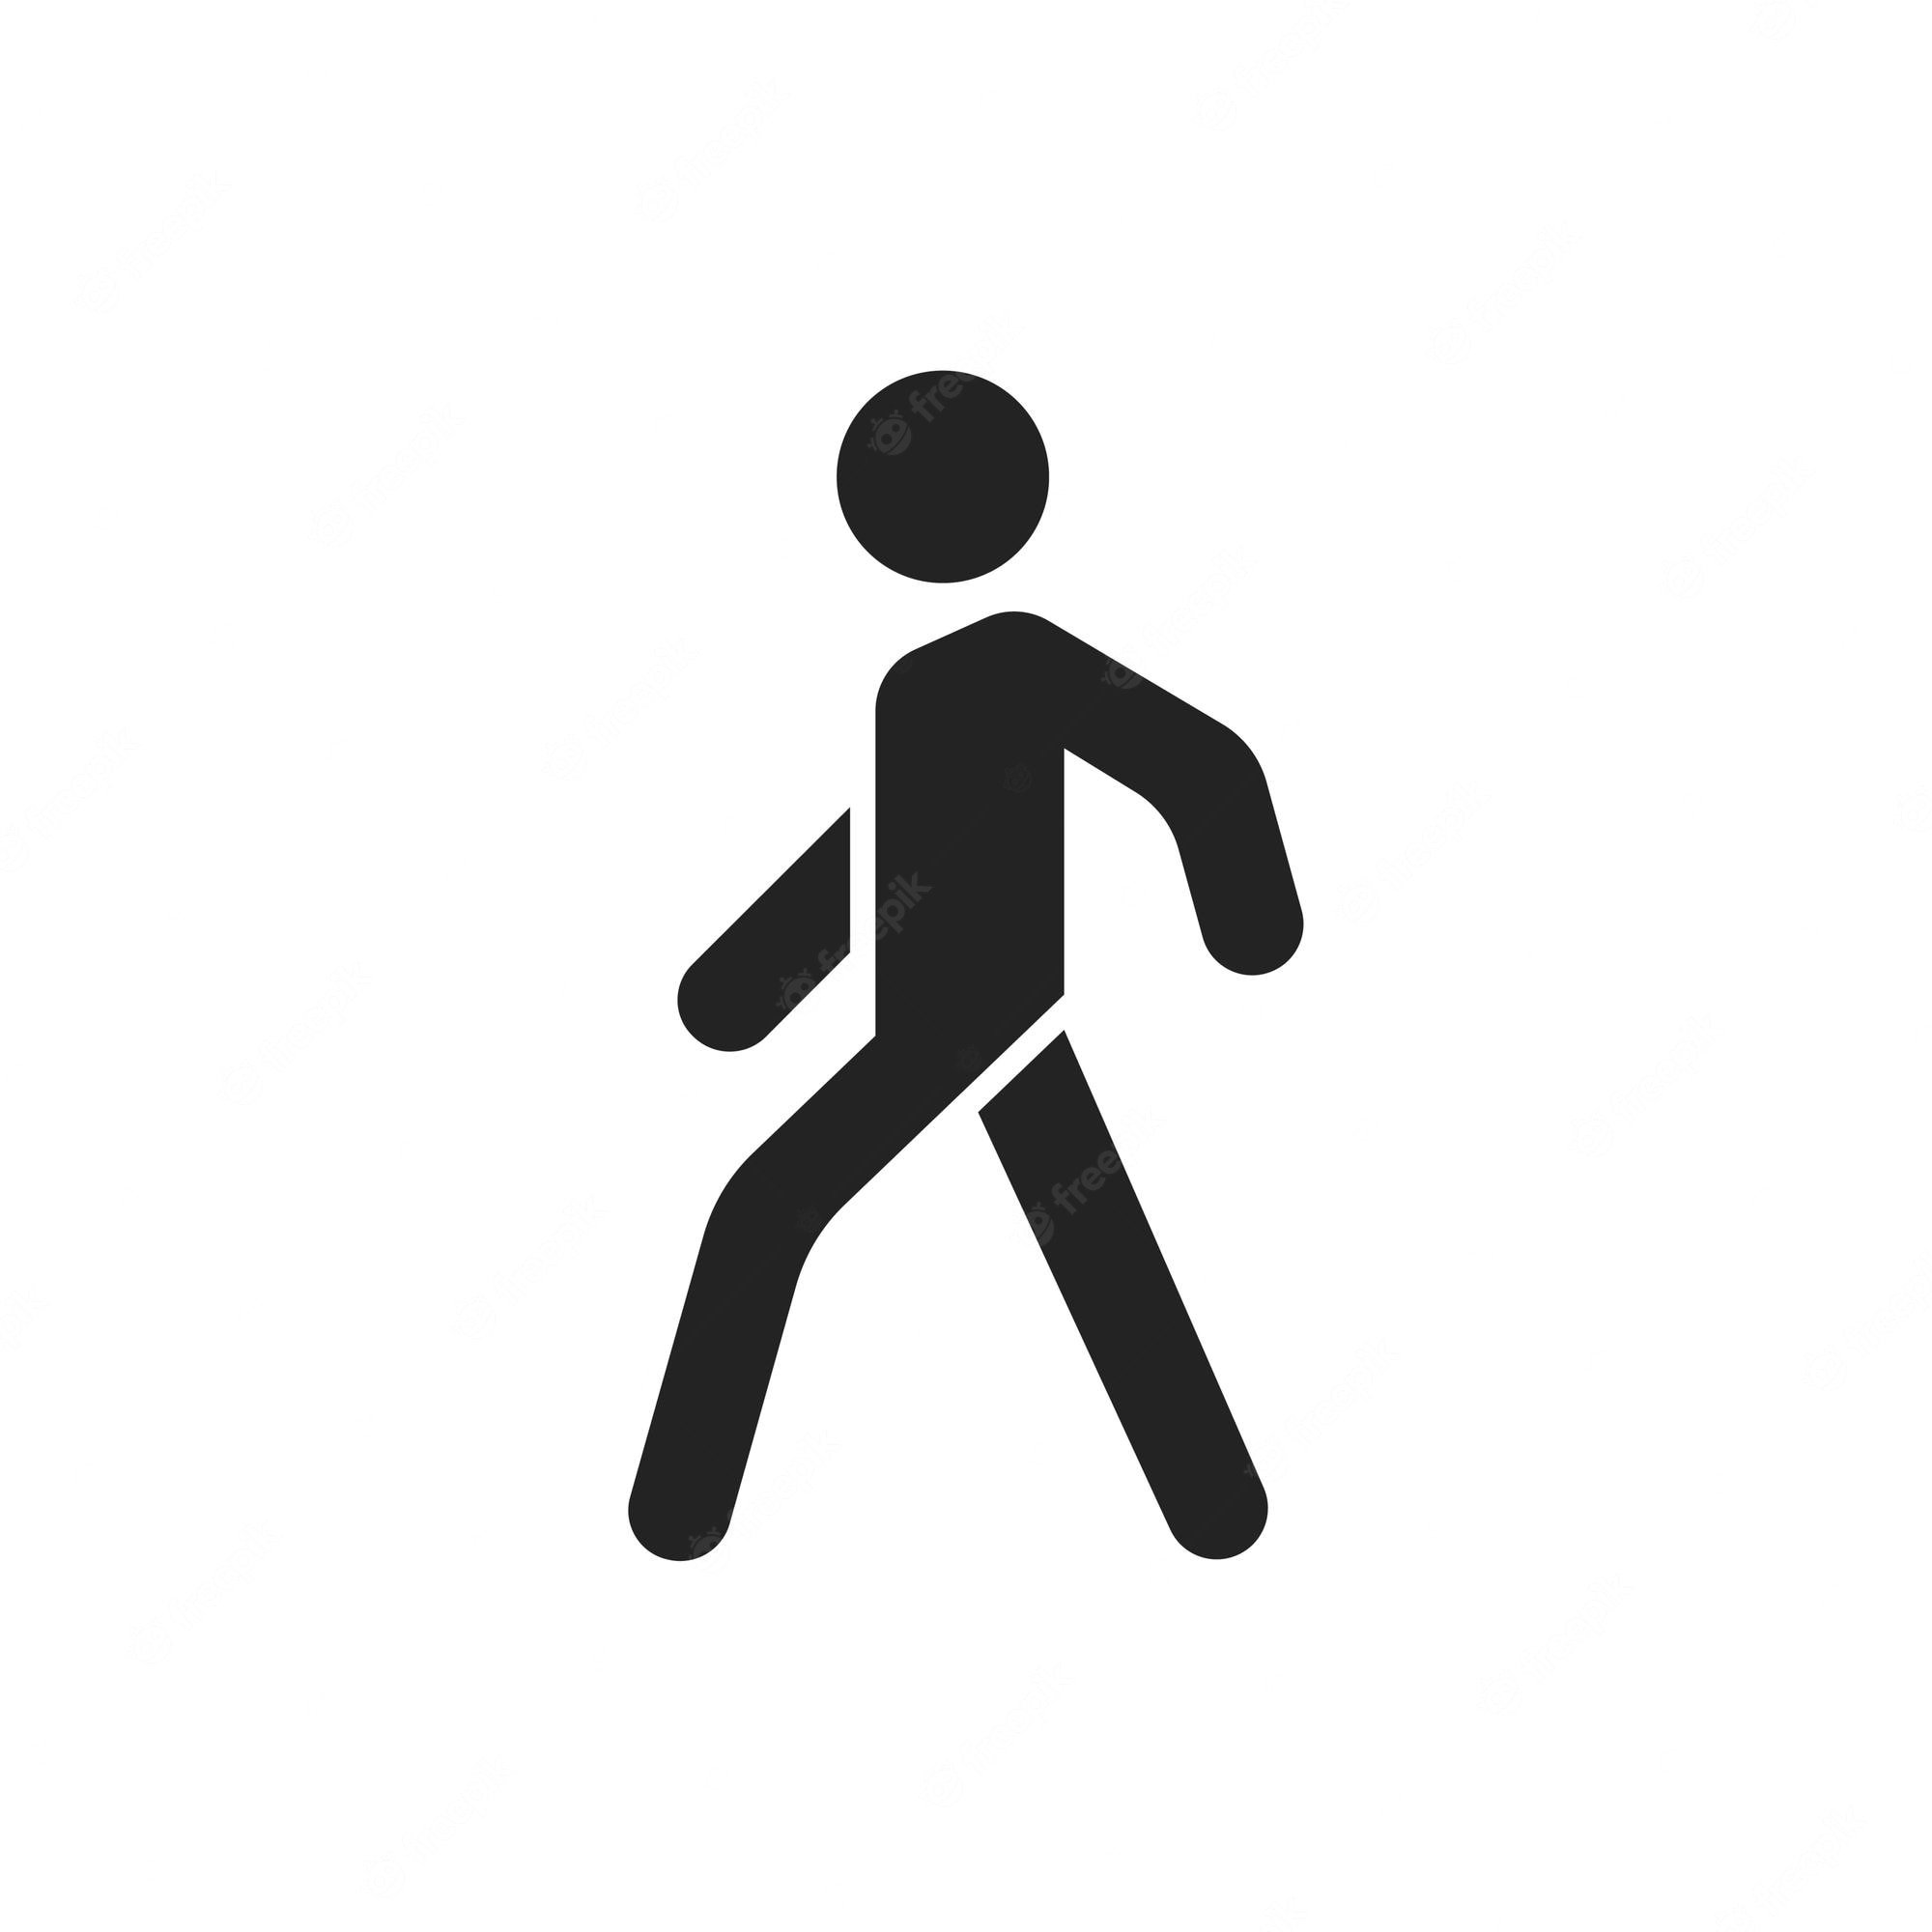 Вправо не ходить. Человечек пешеход. Пешеход символ. Человечек с пешеходного знака. Символ идущего человека.